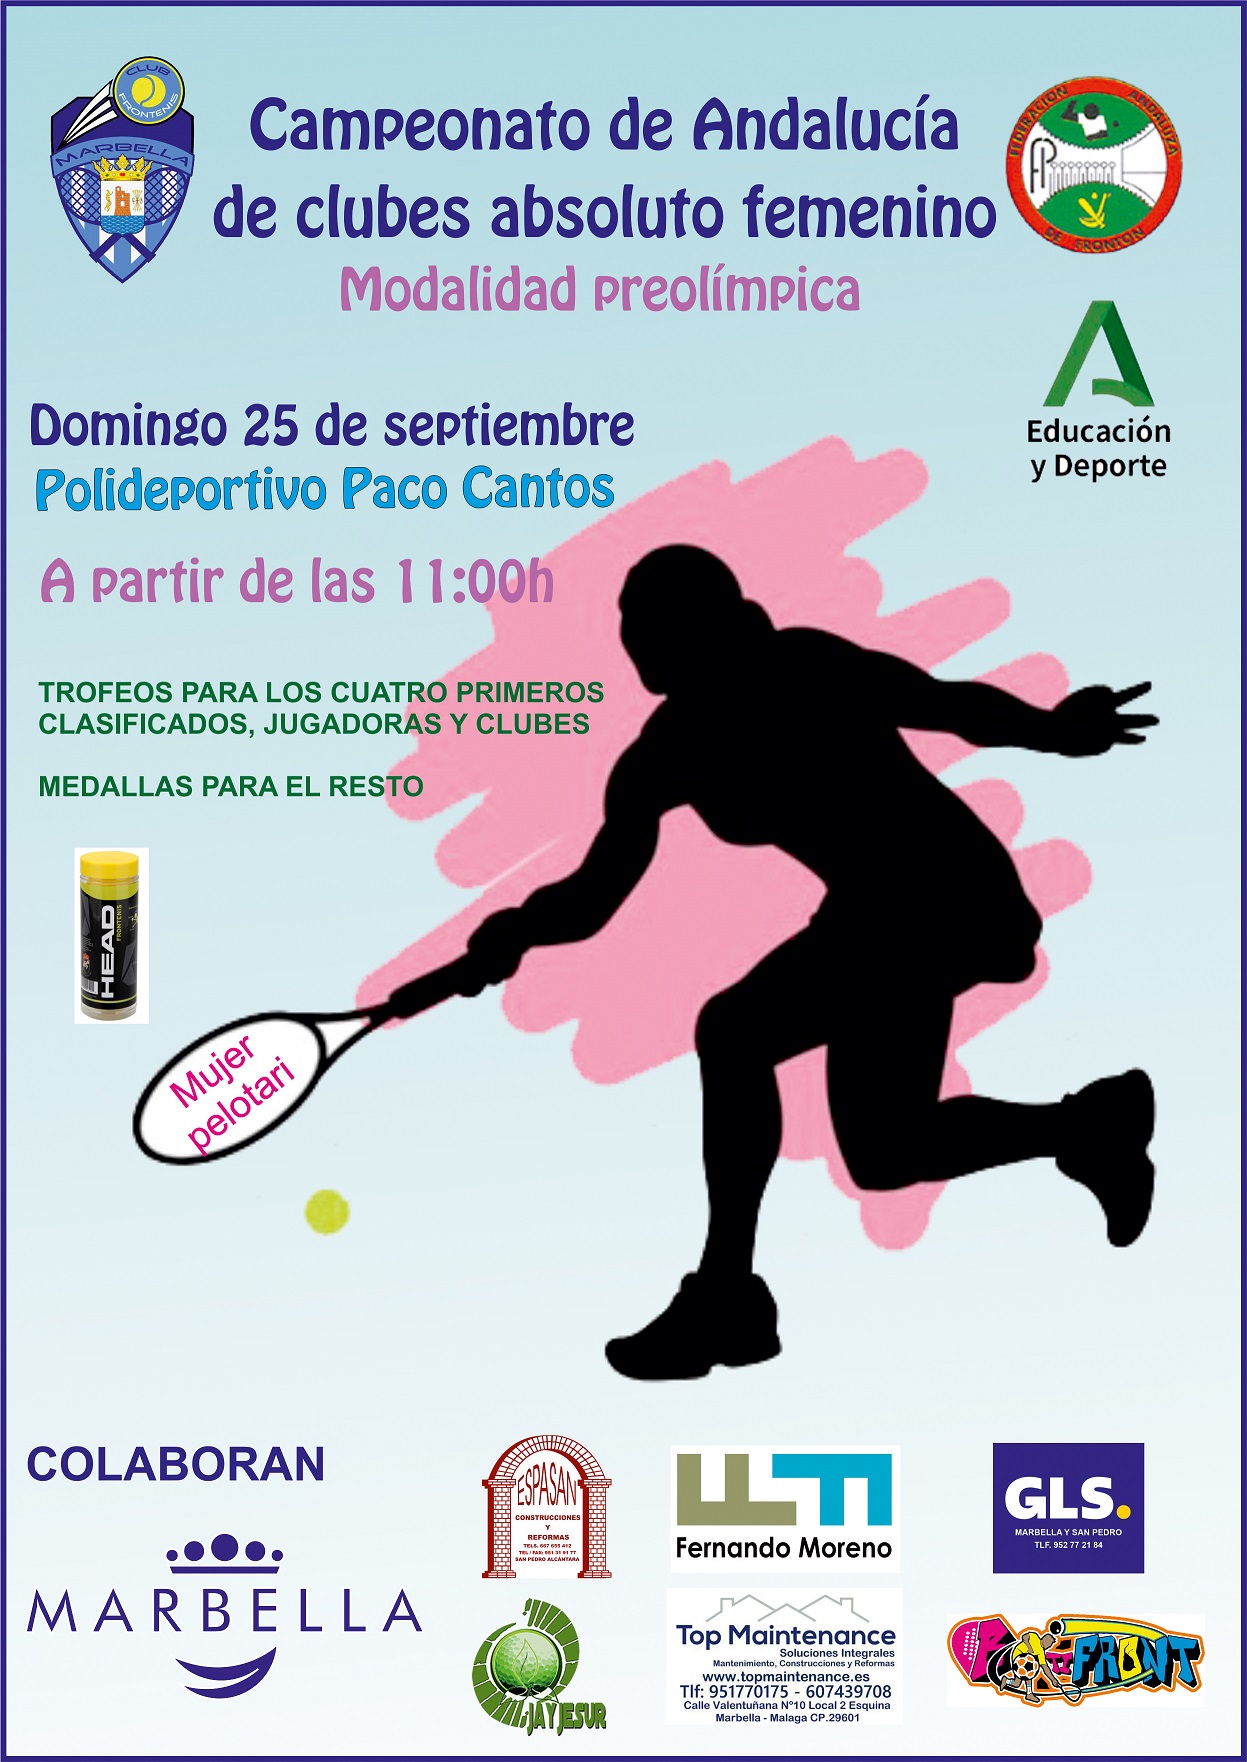 Marbella será sede el próximo 25 de septiembre del Campeonato de Andalucía de Clubes de Frontenis Femenino en la modalidad preolímpica